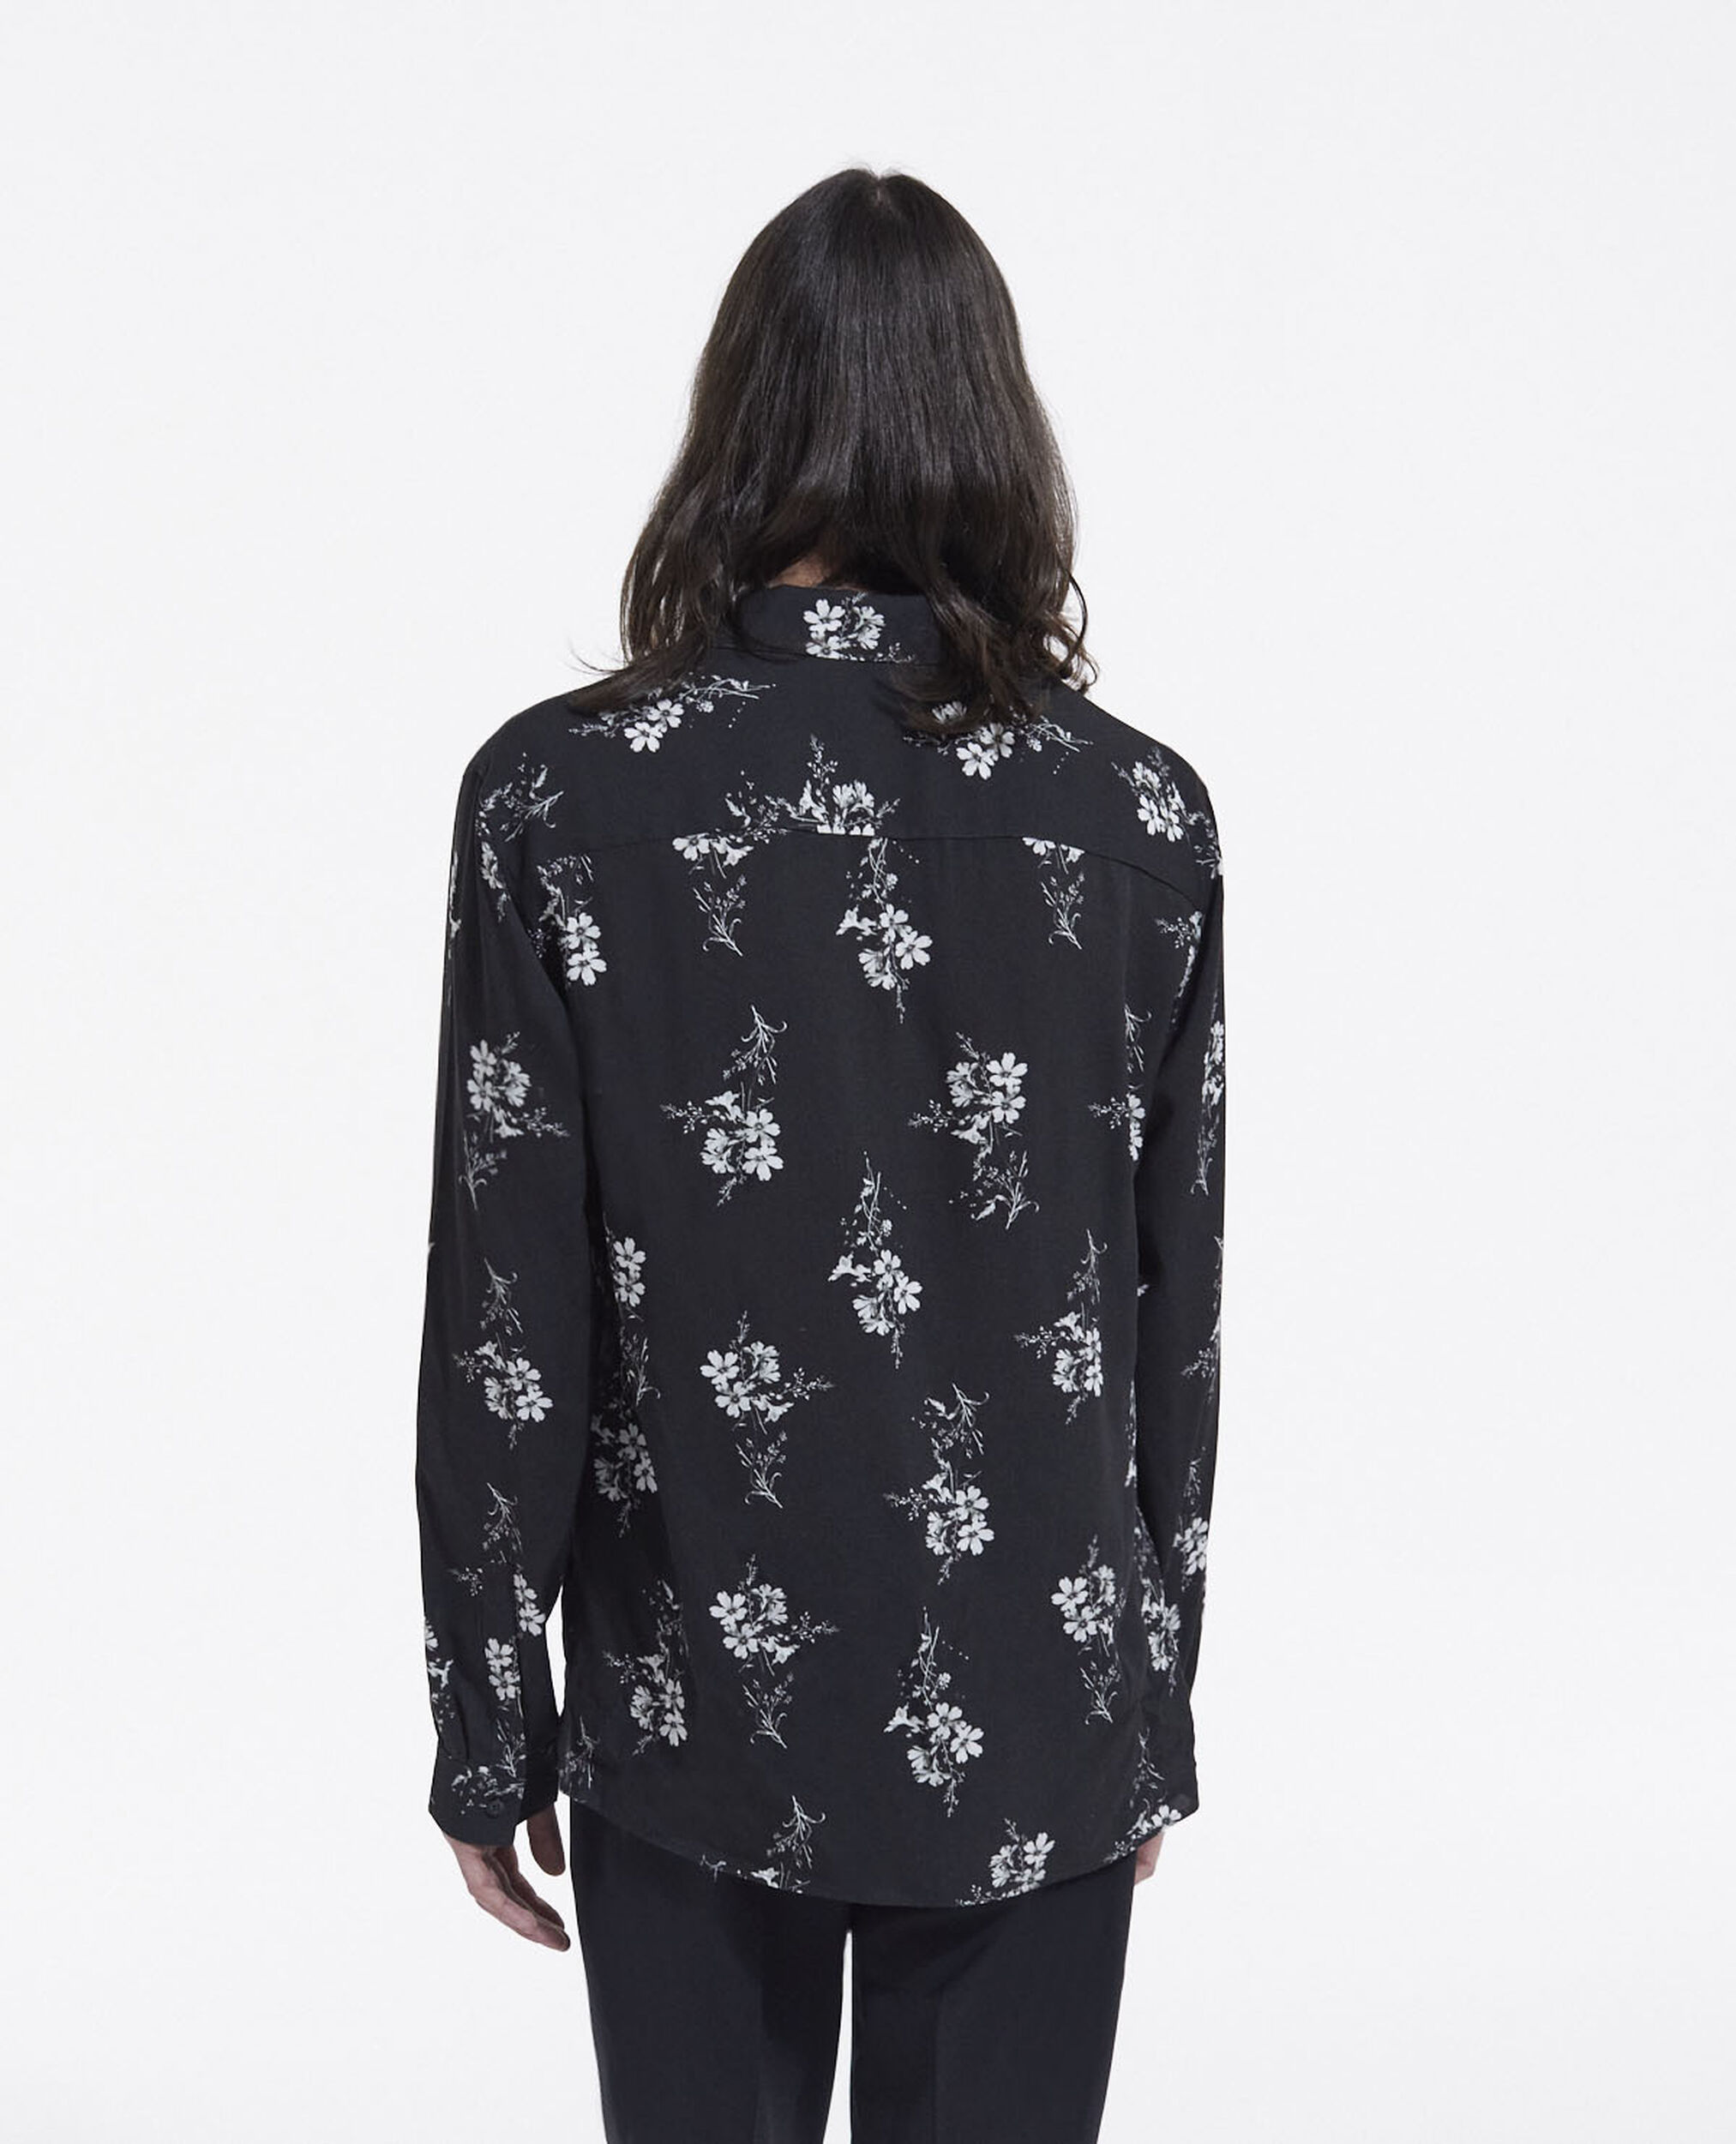 Camisa estampado floral, BLACK WHITE, hi-res image number null